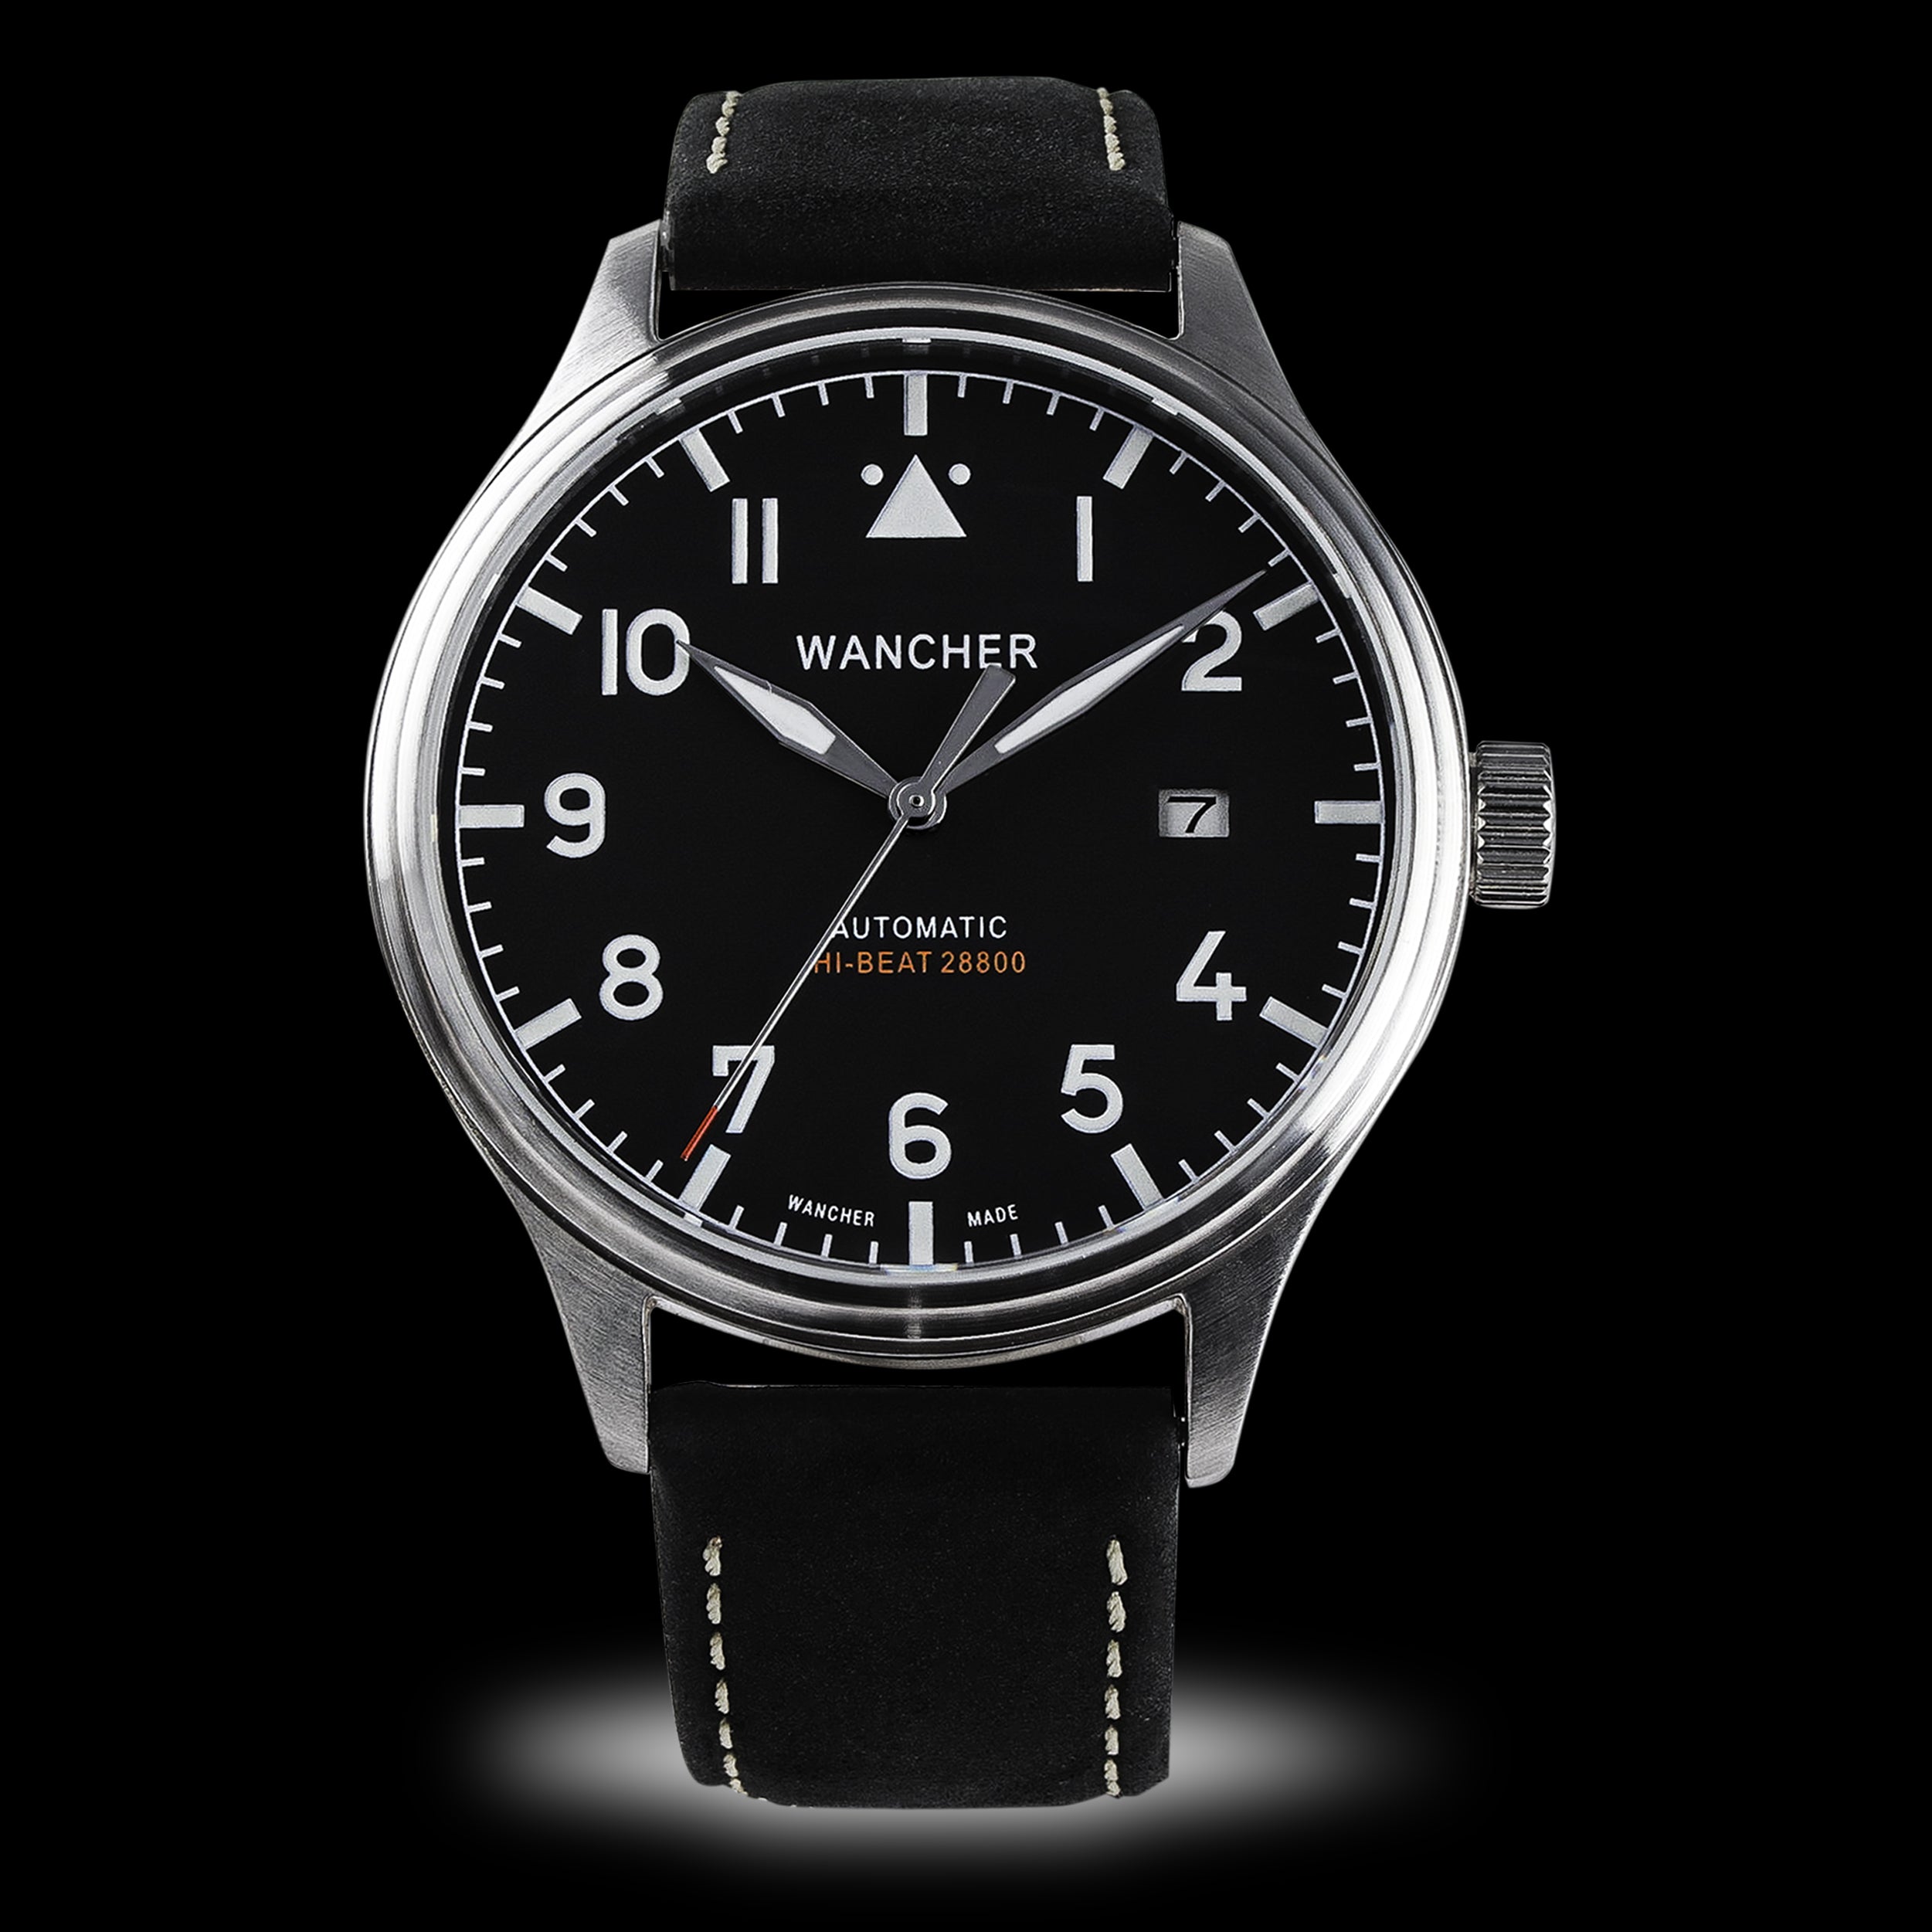 Wancher Watch Automatic Watch Wancher Flugel Pilot Watch IWC alternative